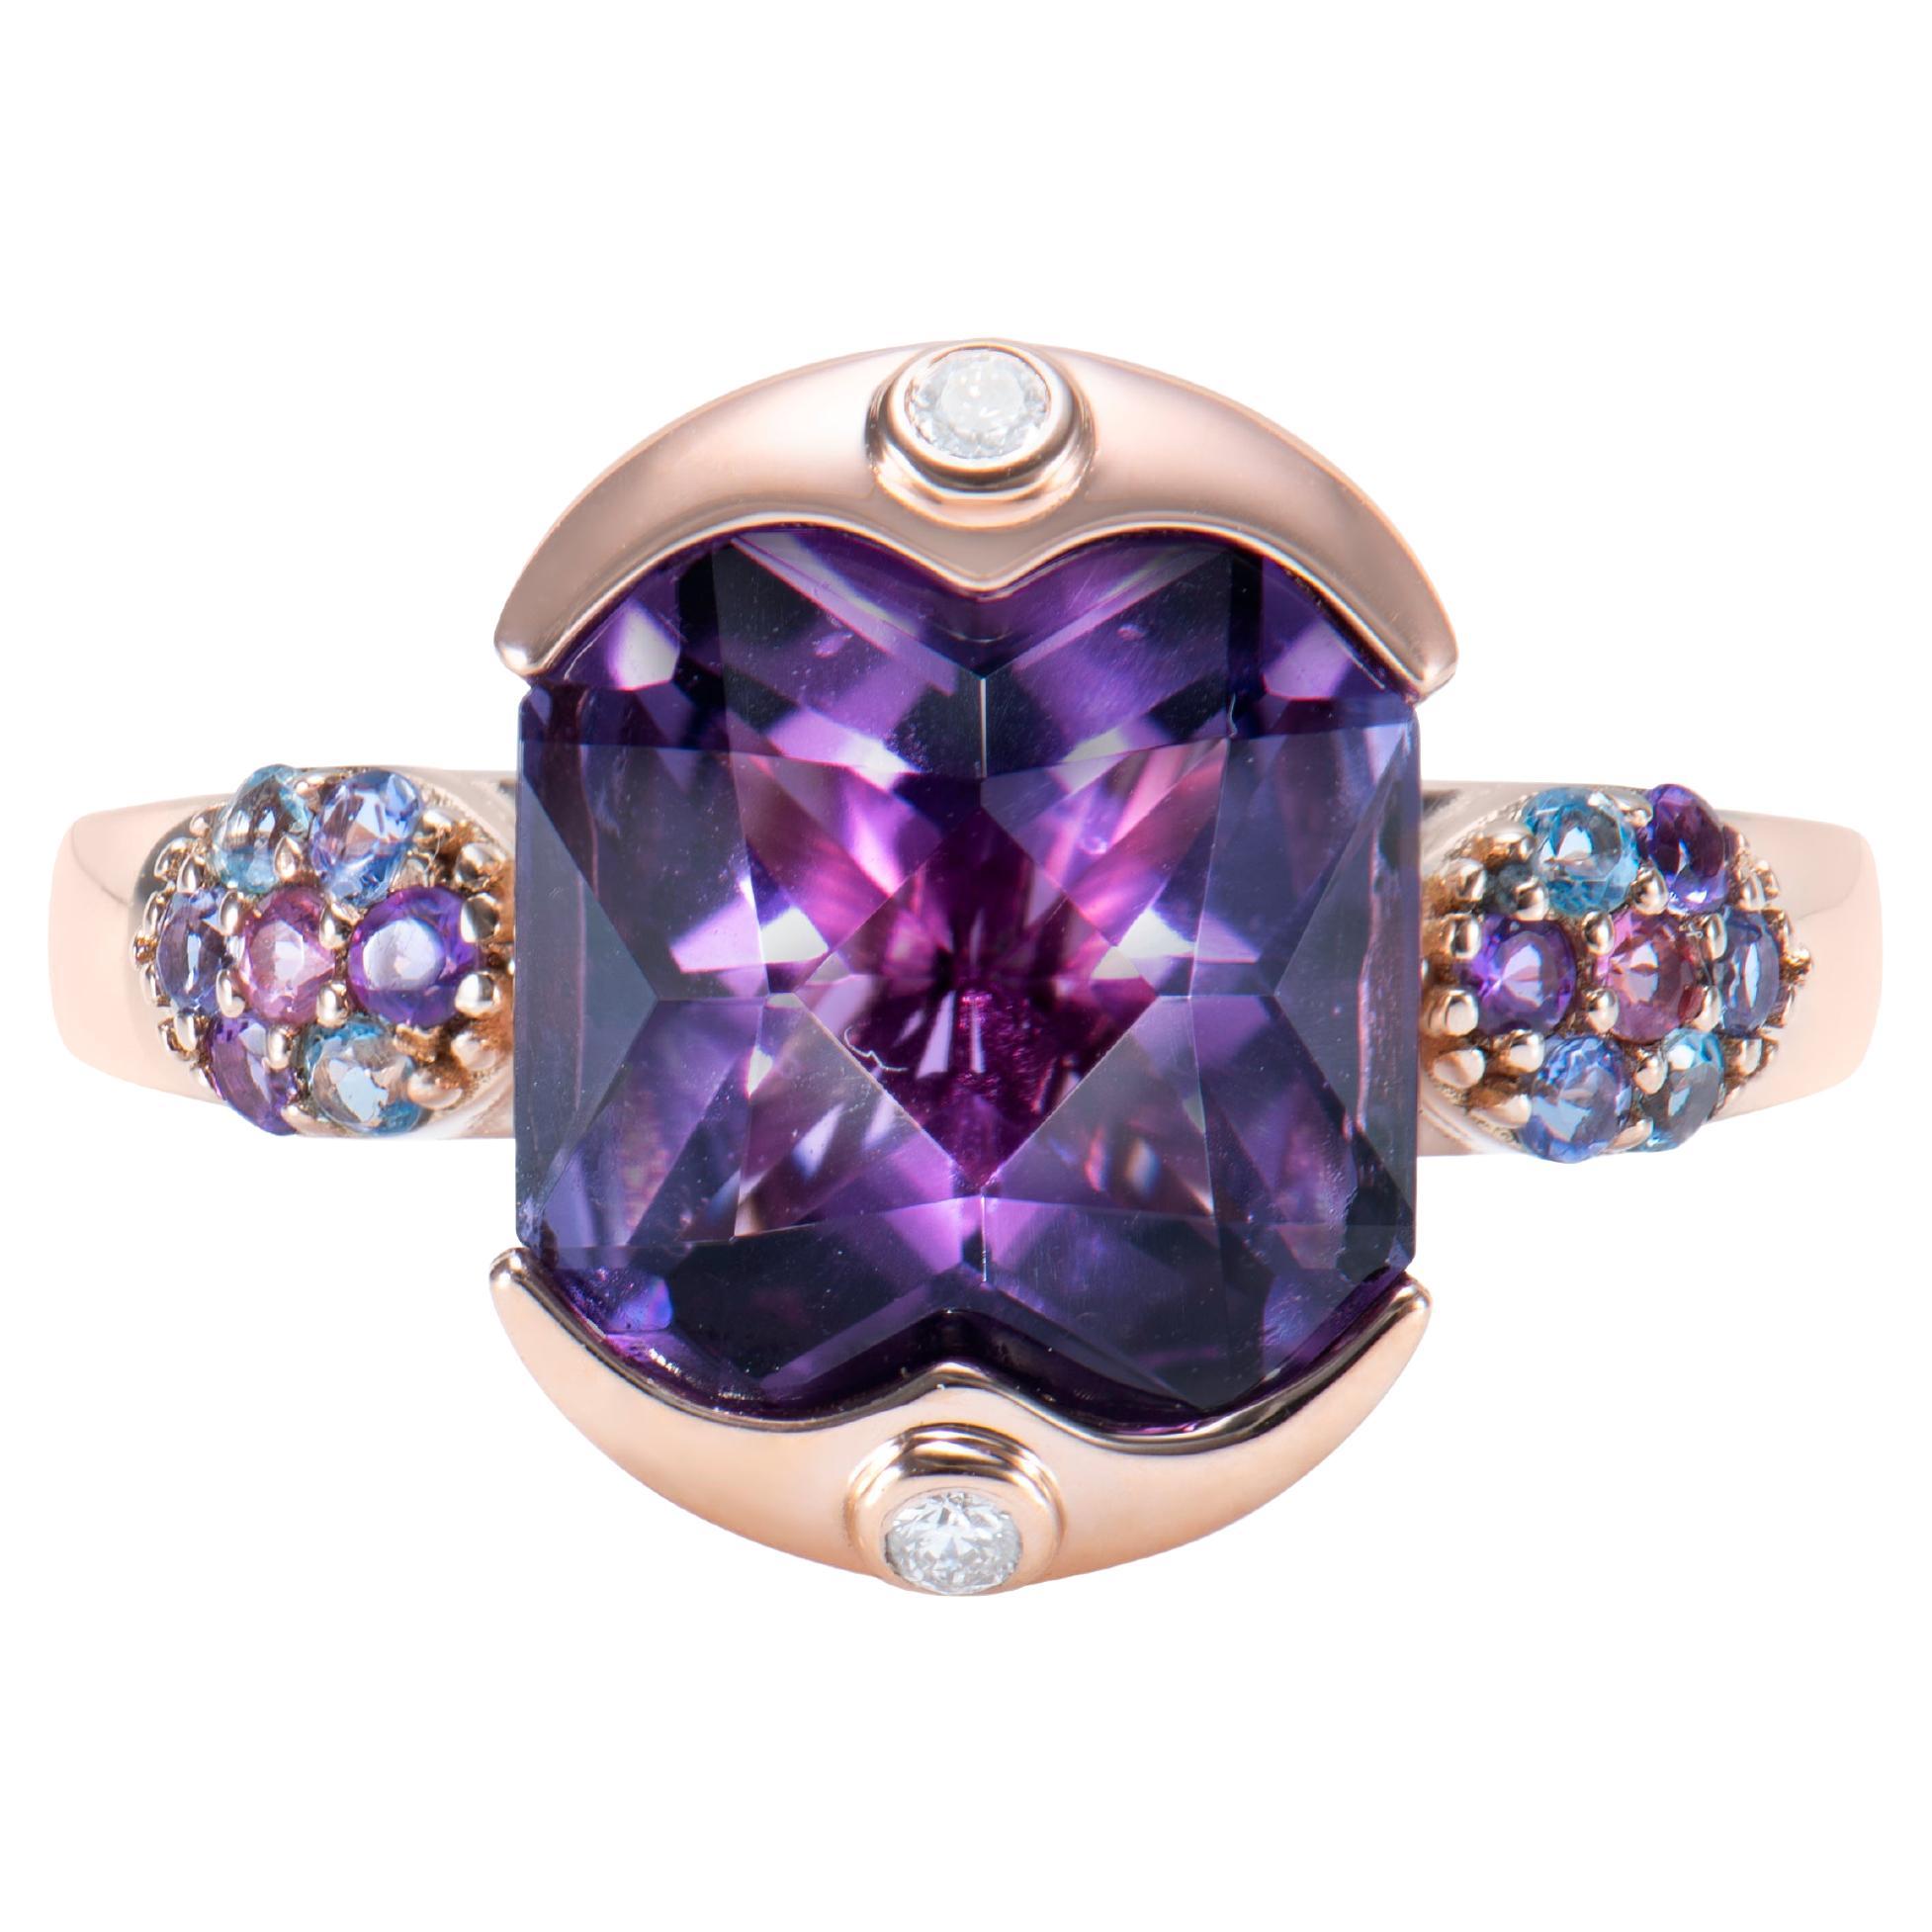 Ring aus 18 Karat Roségold mit Amethyst, mehreren Edelsteinen und weißen Diamanten.